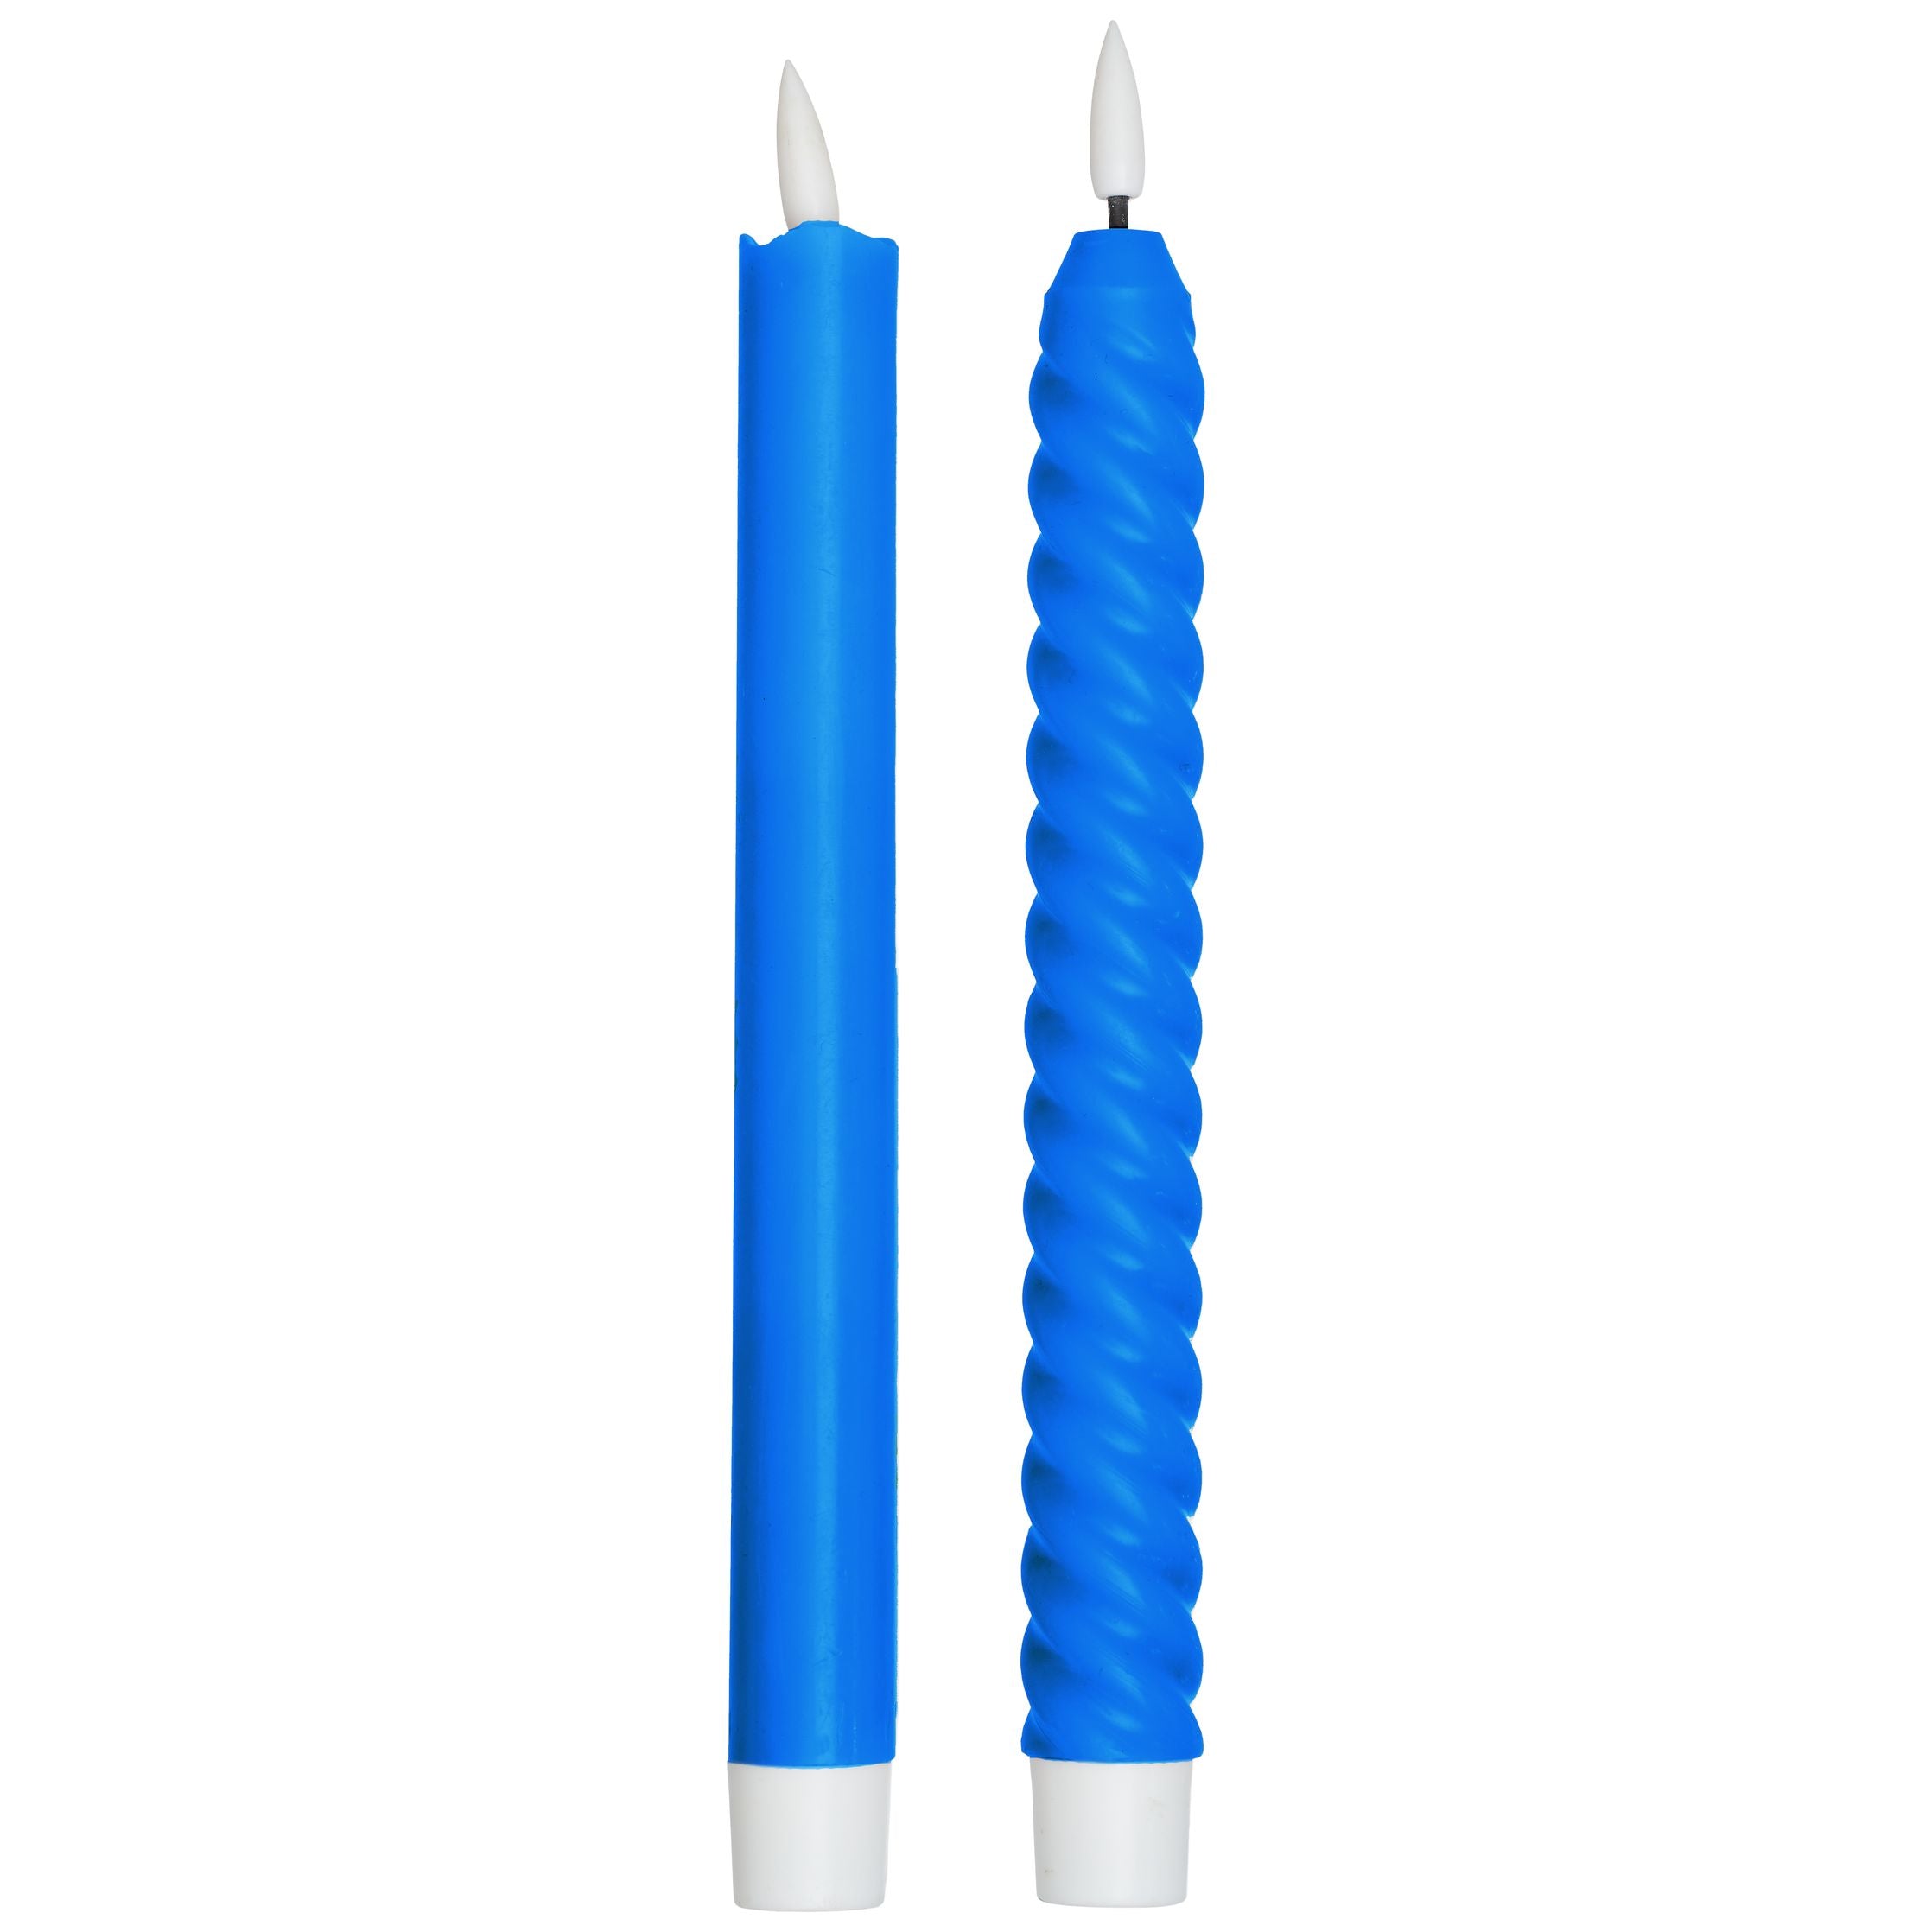 Designbuchstaben gemütlich für immer LED -Kerzen (2 PCs), Cobaltblau